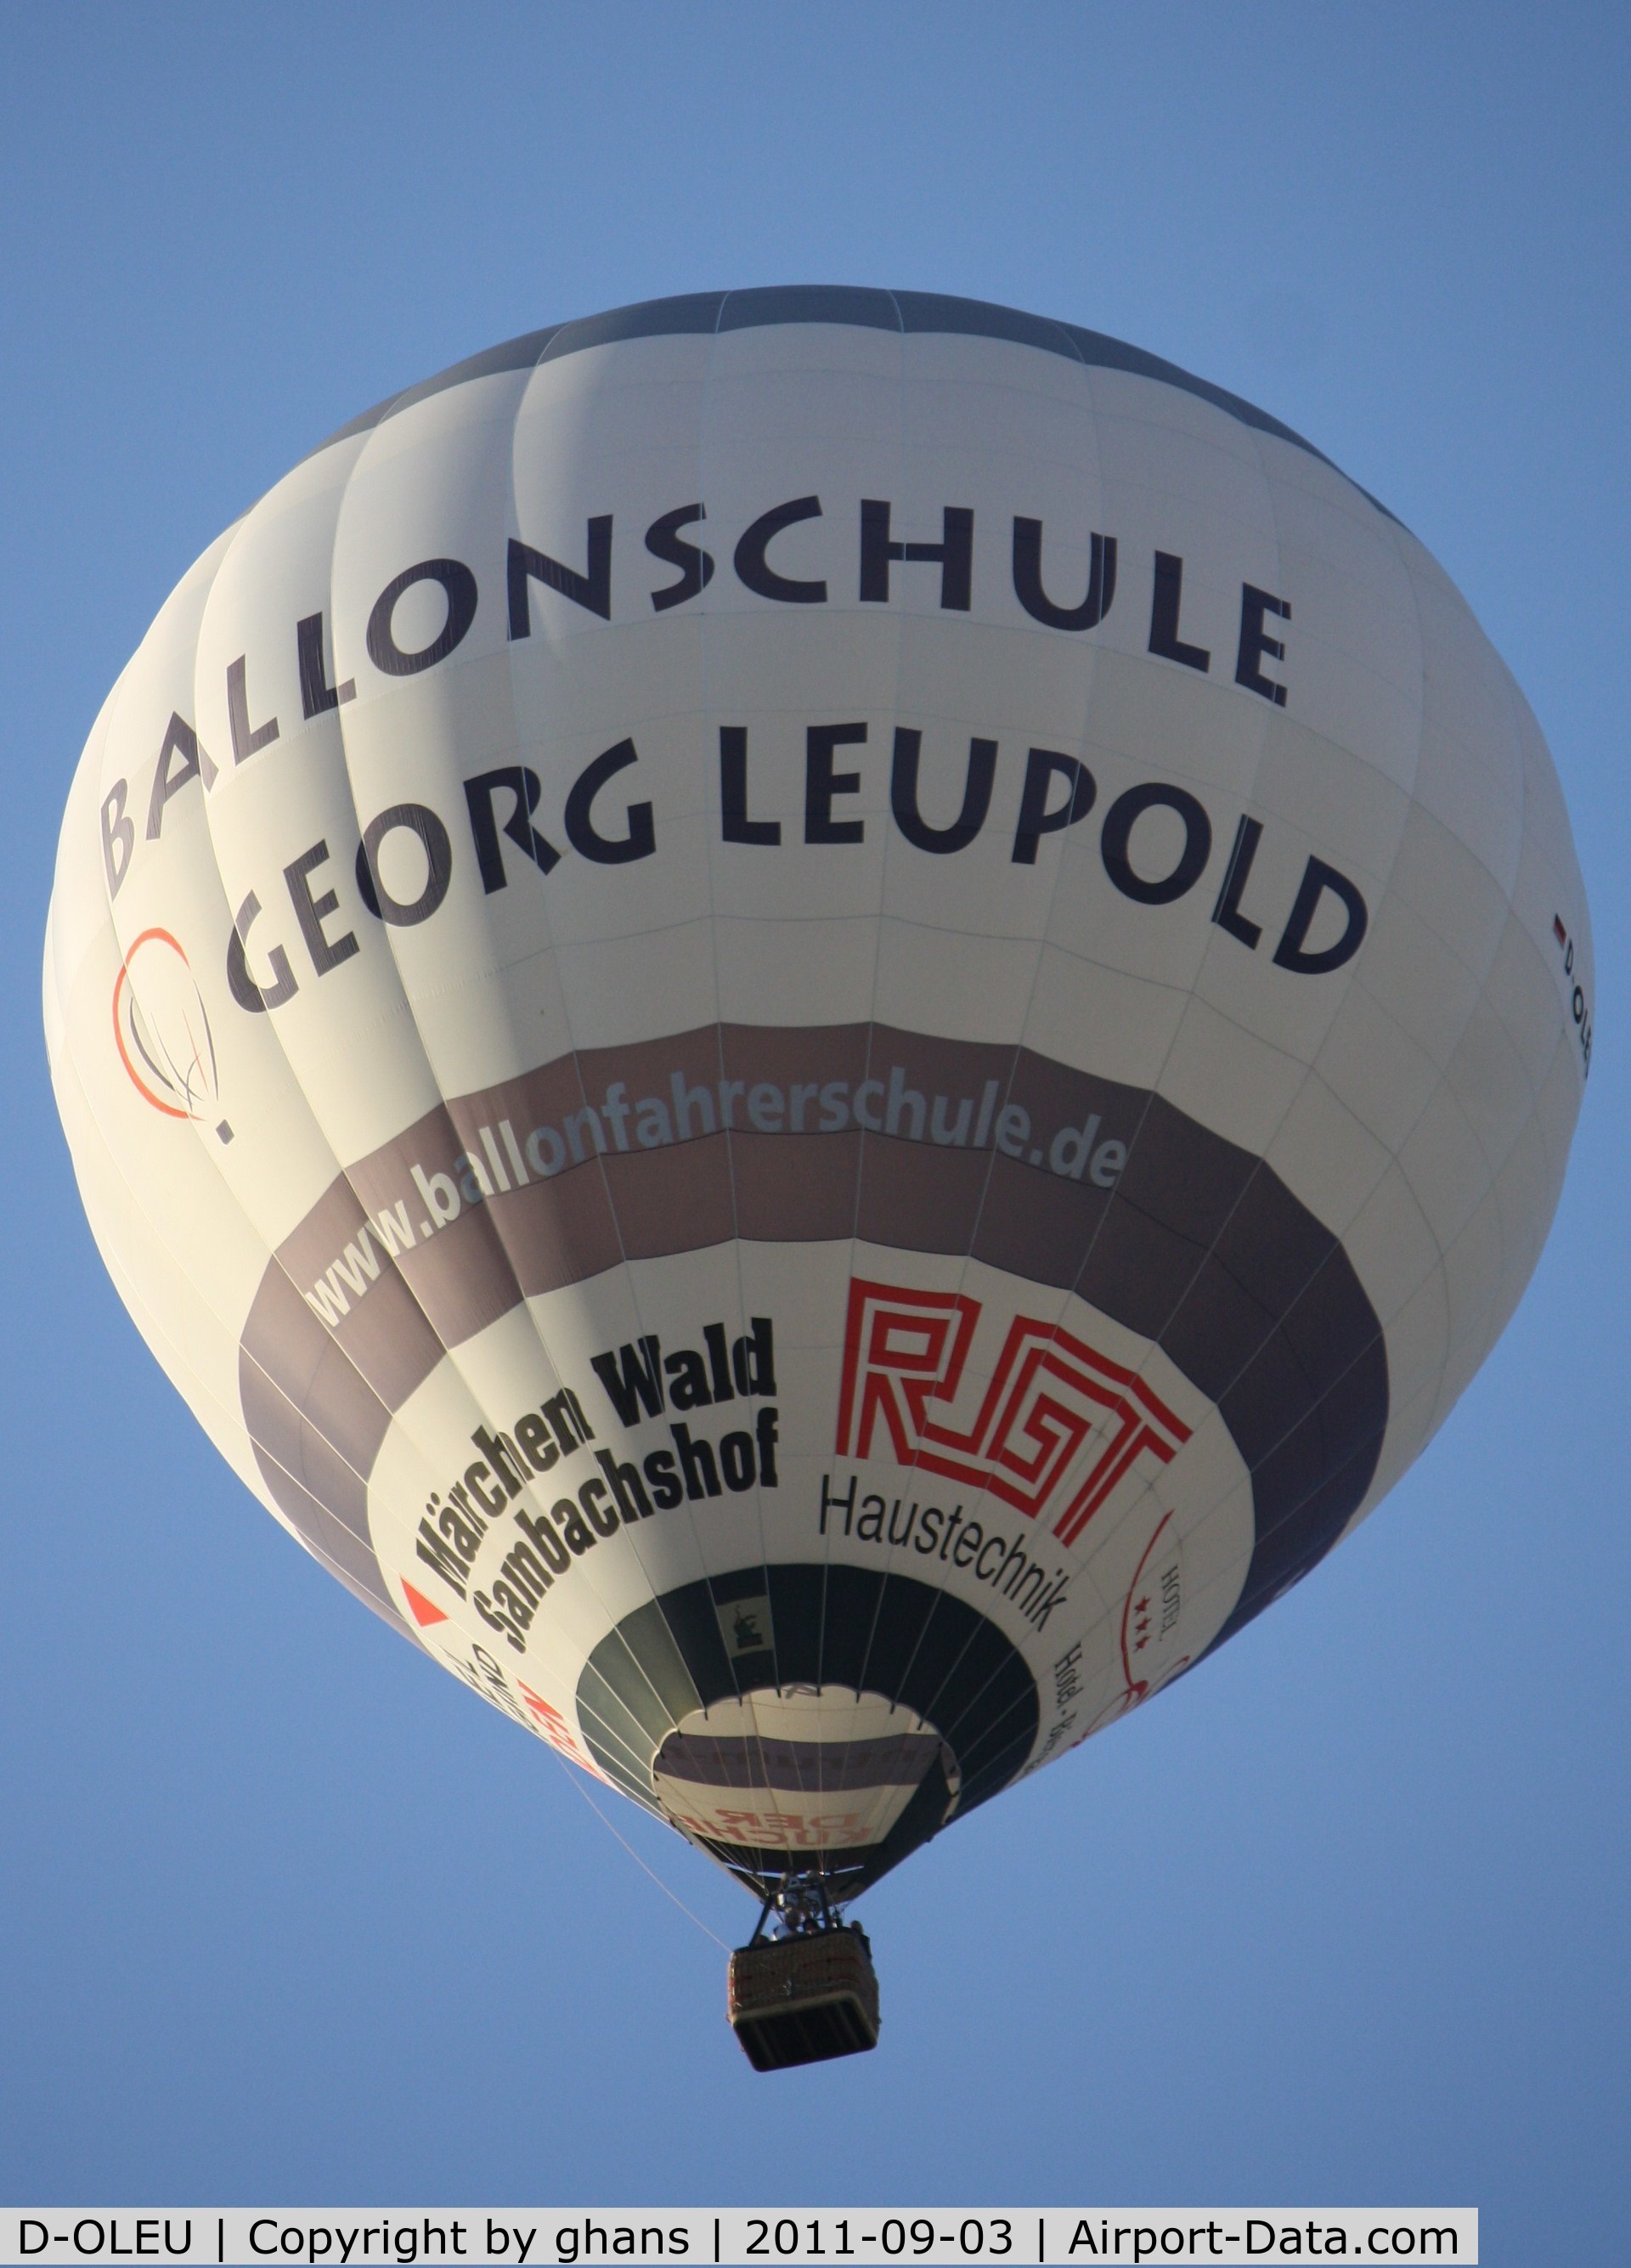 D-OLEU, 2004 Schroeder Fire Balloons G C/N 1096, WIM 2011
'Ballonschule Georg Leupold'